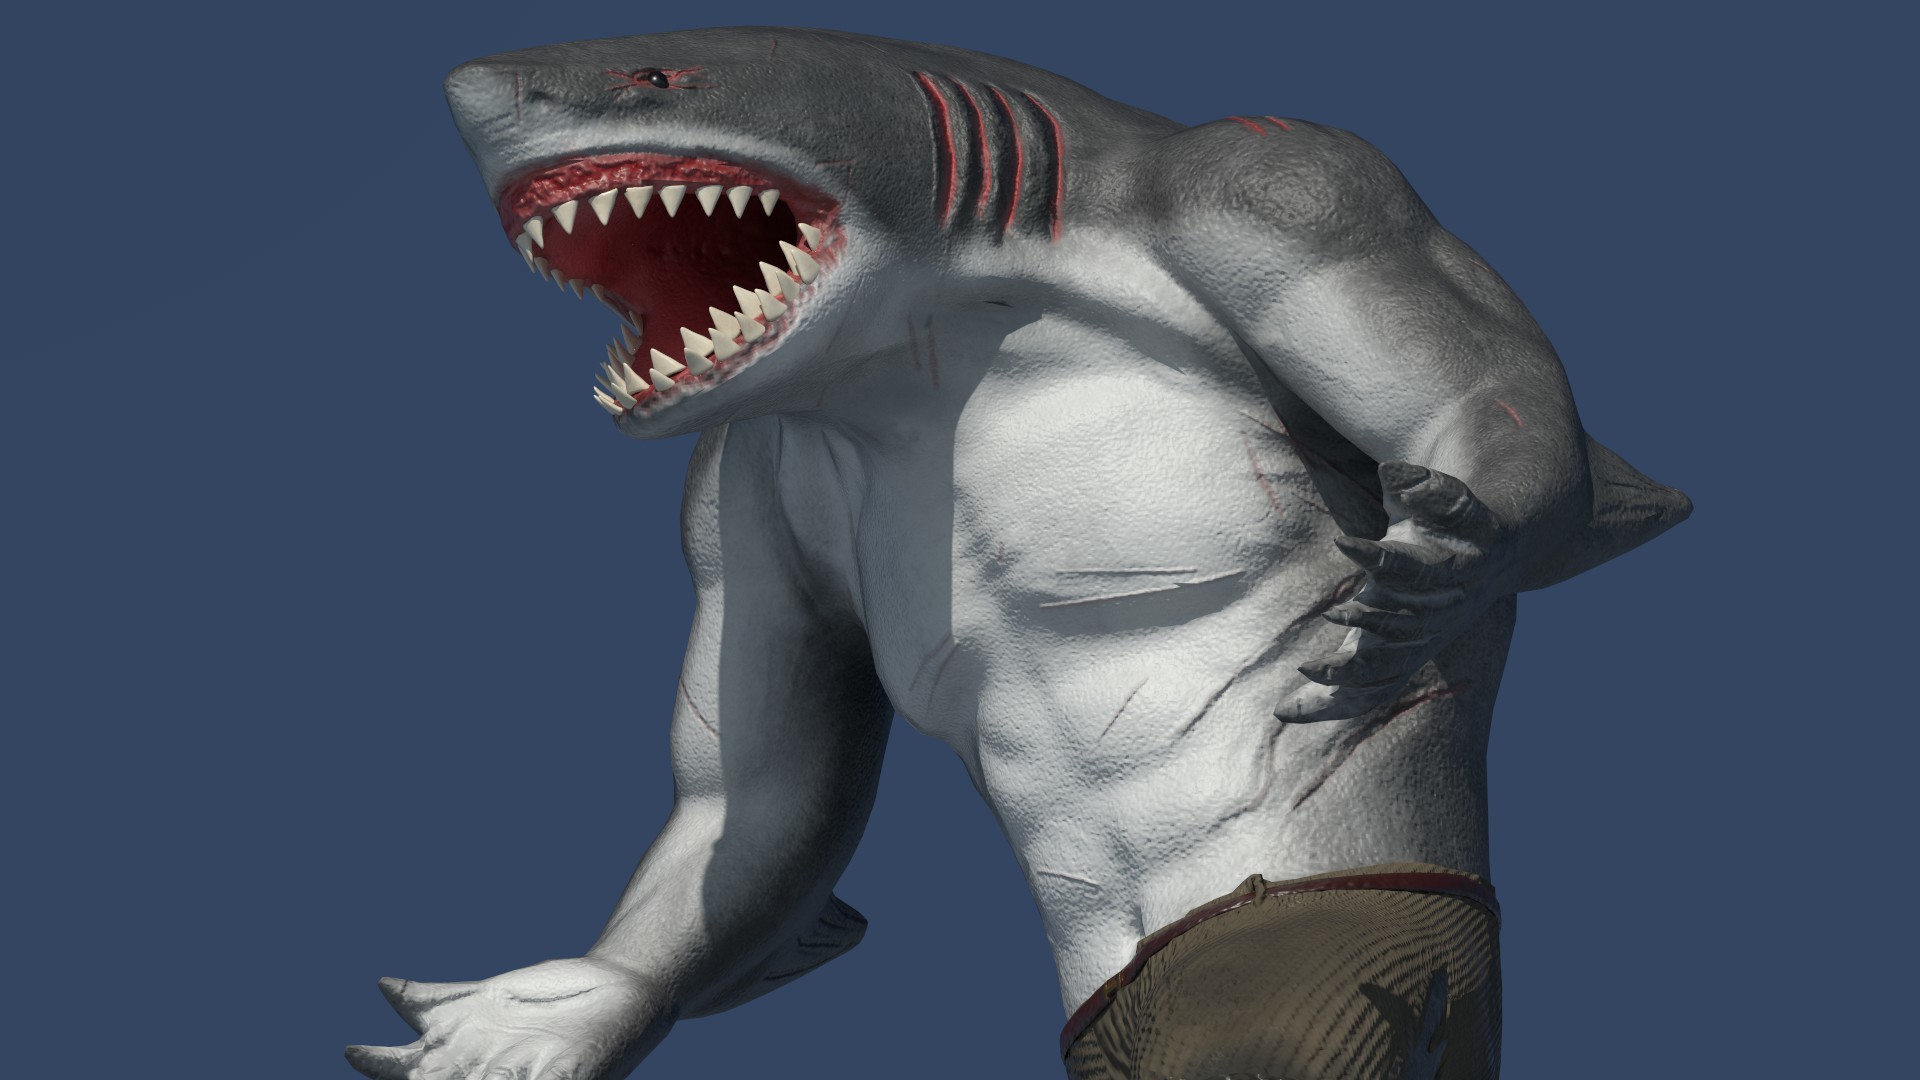 Shark human